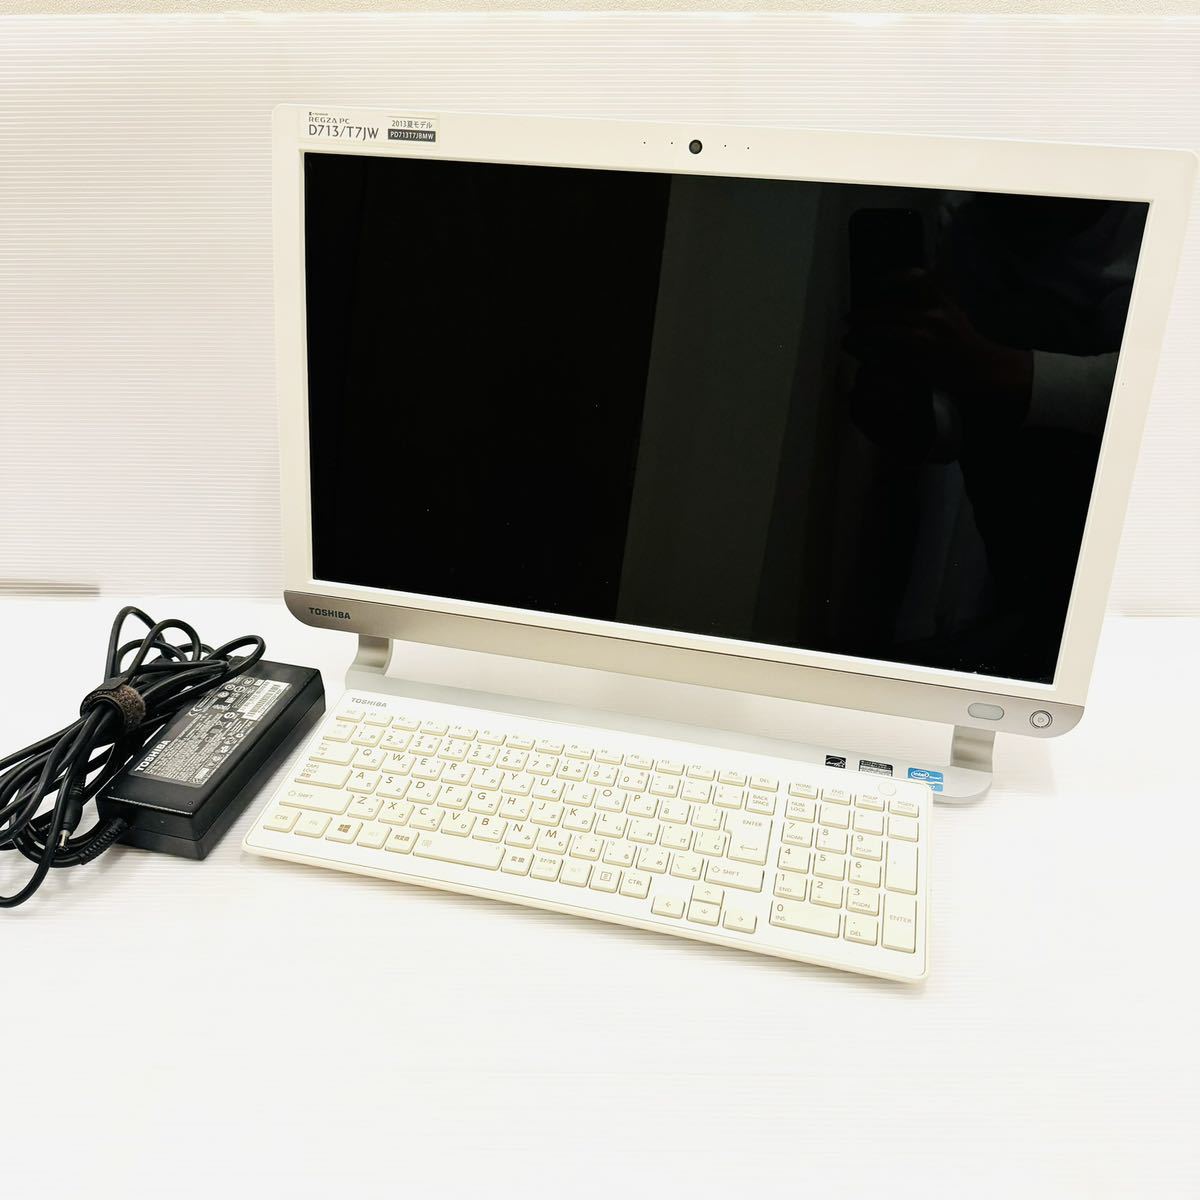 東芝 dynabook REGZA PC D713/T7JW PD713T7JBMW 21.5型フルHD/高性能Core i7/メモリ8GB/HDD2TB/Win8の画像1